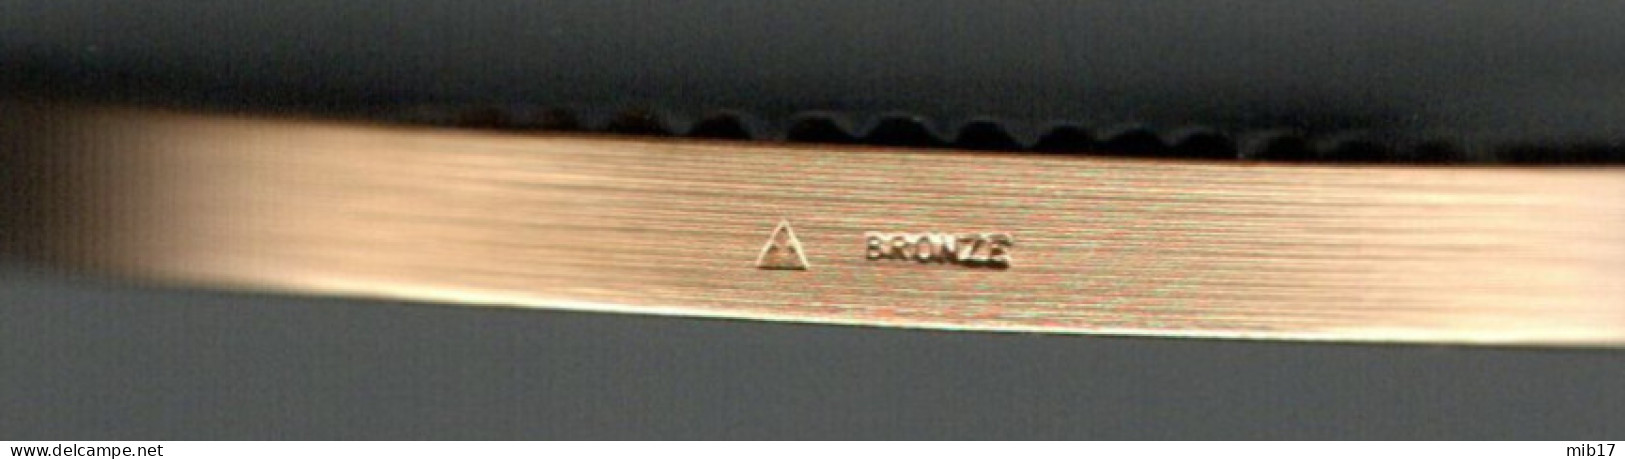 Médaille Du Travail En Bronze ARTHUS BERTRAND - Industrie Par Le Graveur J-P ROCH - Diamètre 57 Mm - Professionals/Firms